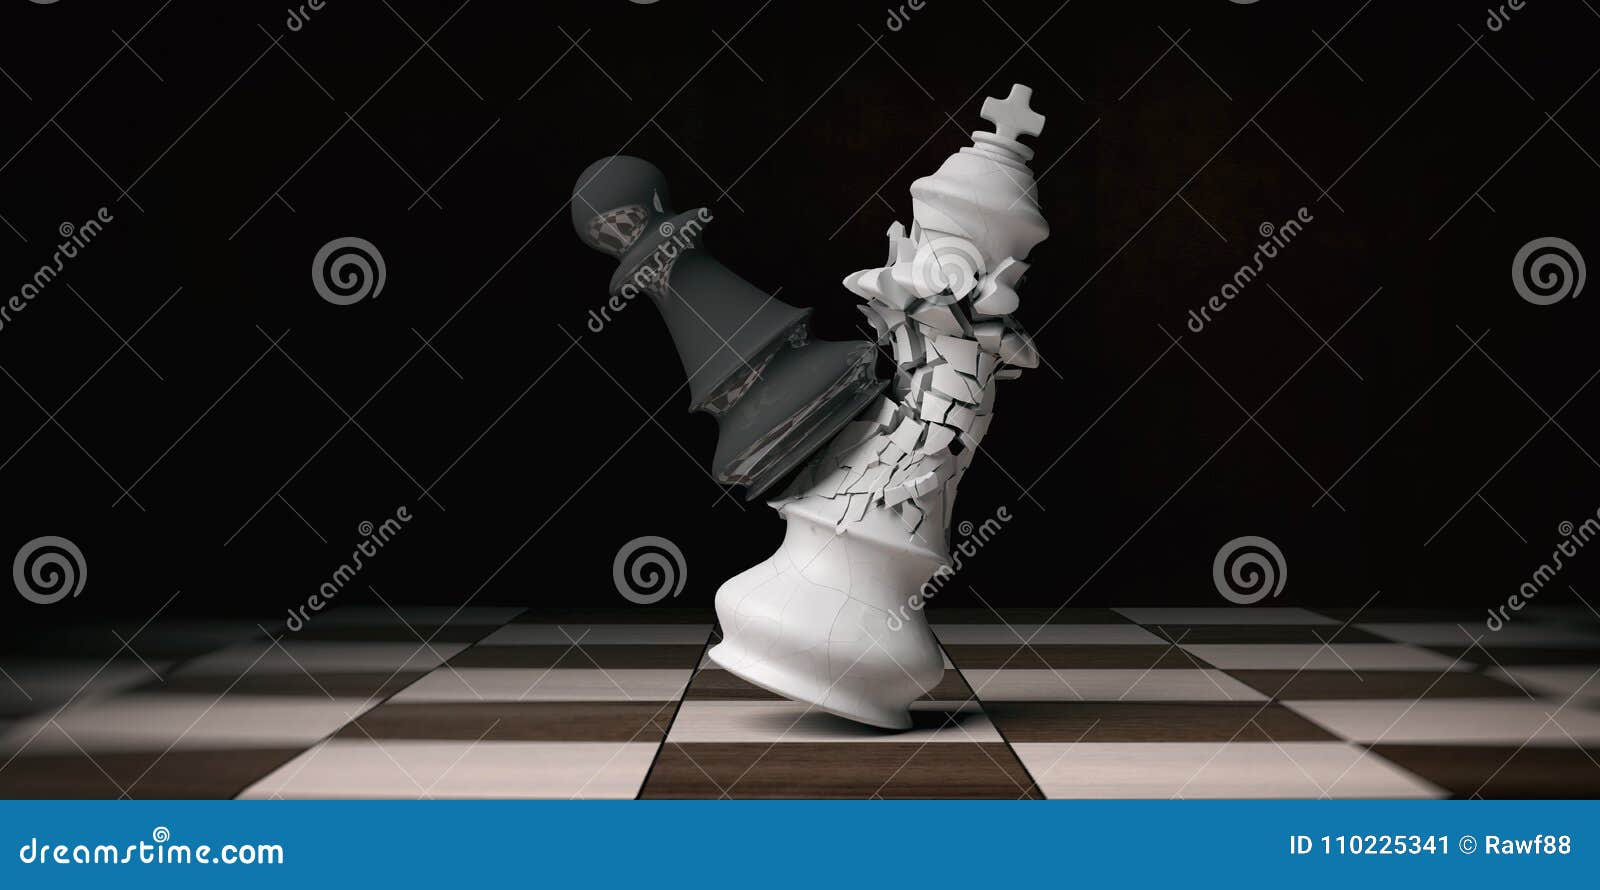 Xadrez de jogo é vitória peça de xadrez branca rei sobre rei preto